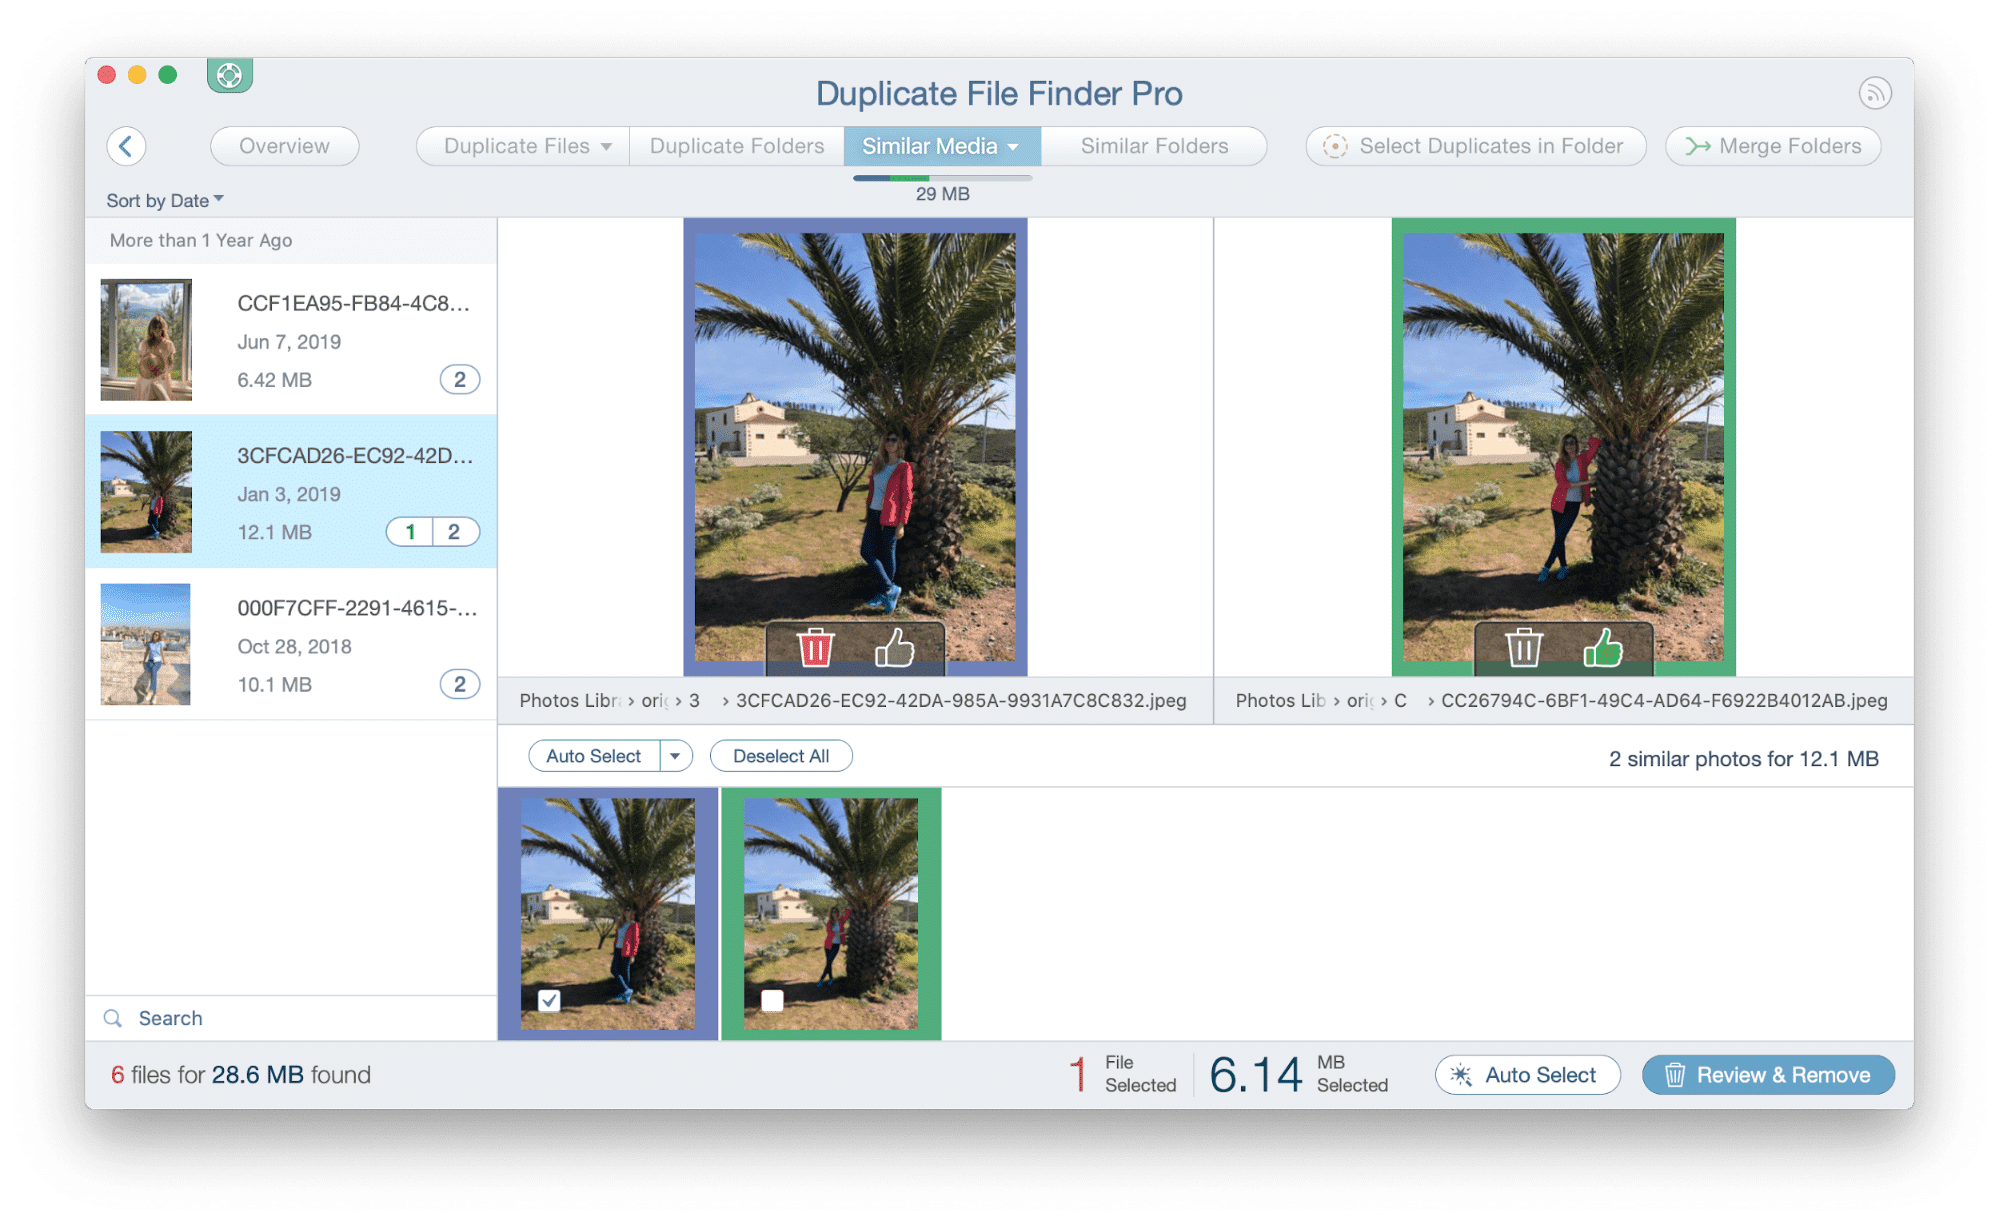 duplicate file finder-similar photos tab